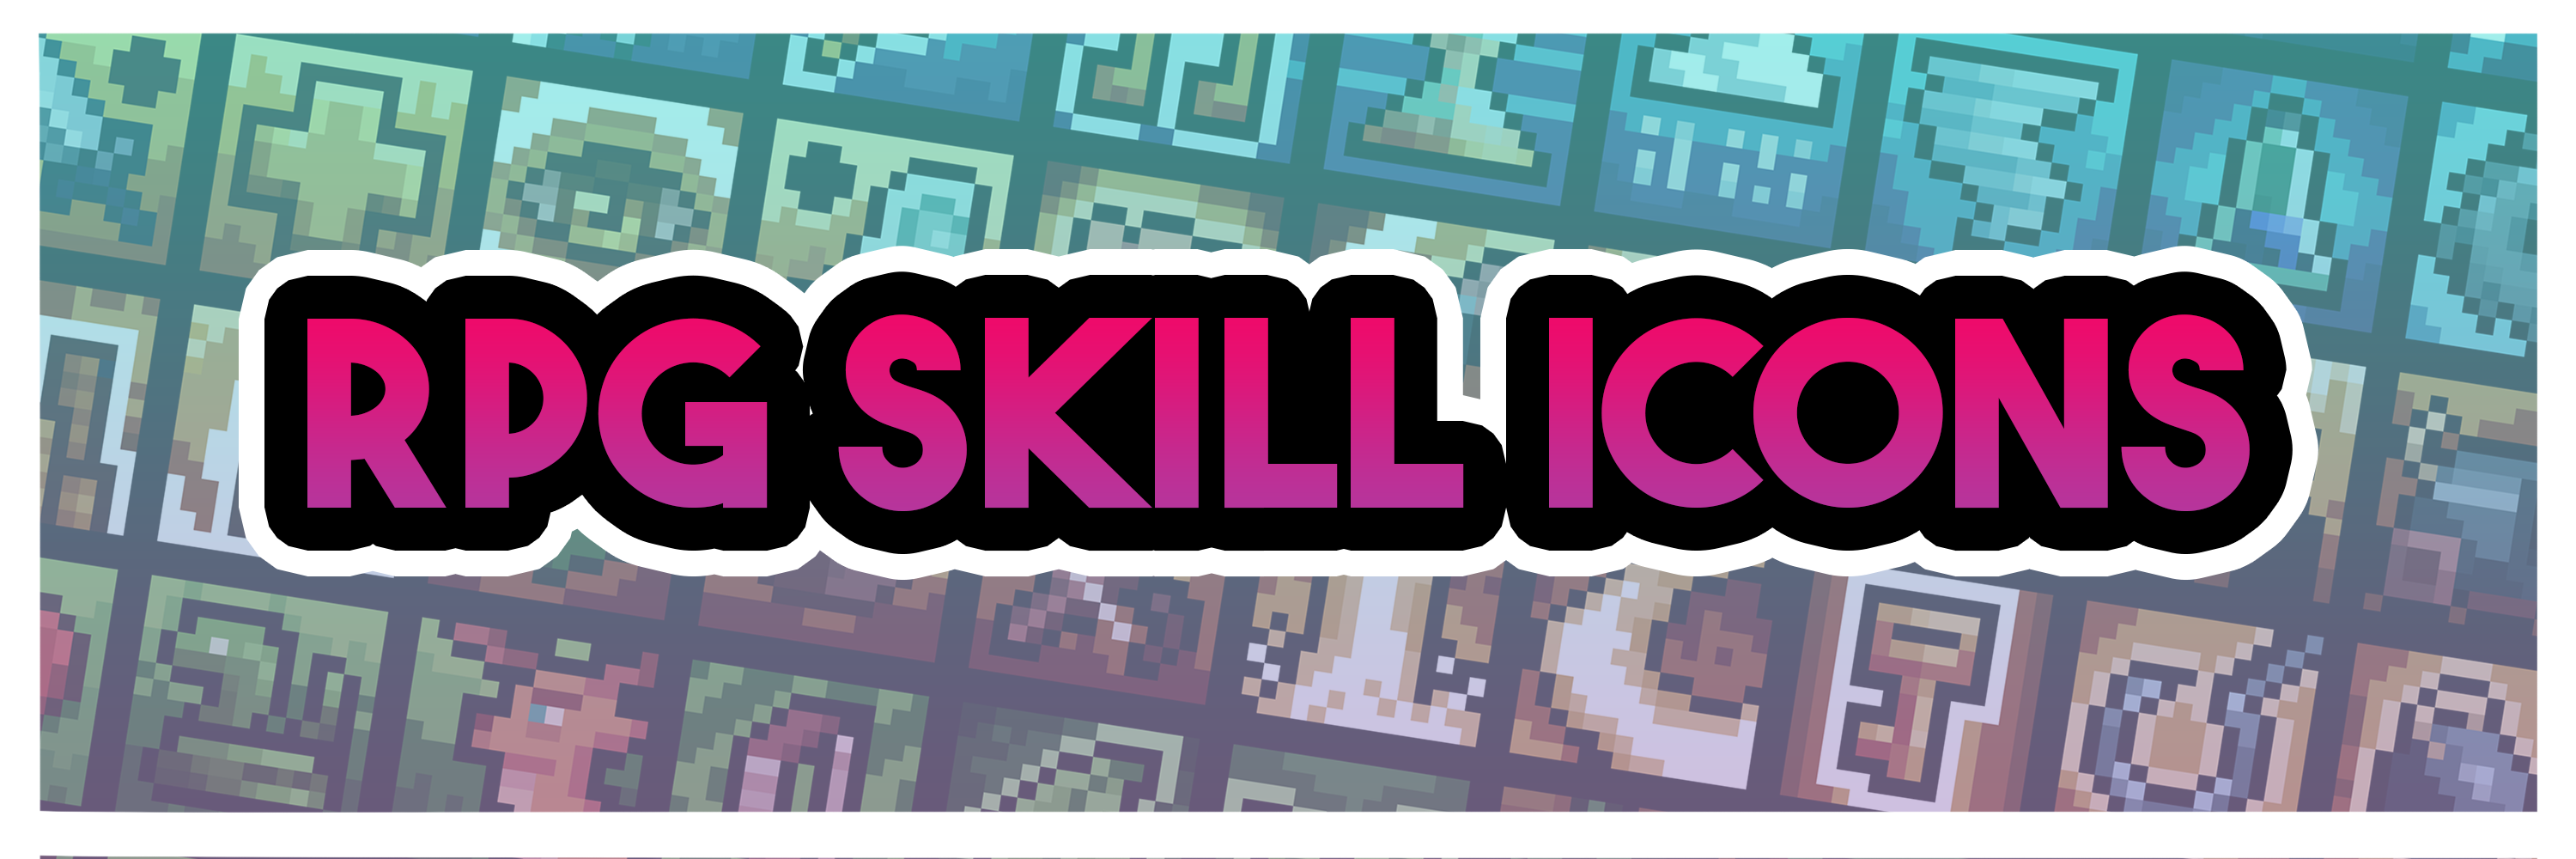 16x16 RPG UI Skill Icons 100+ Pack